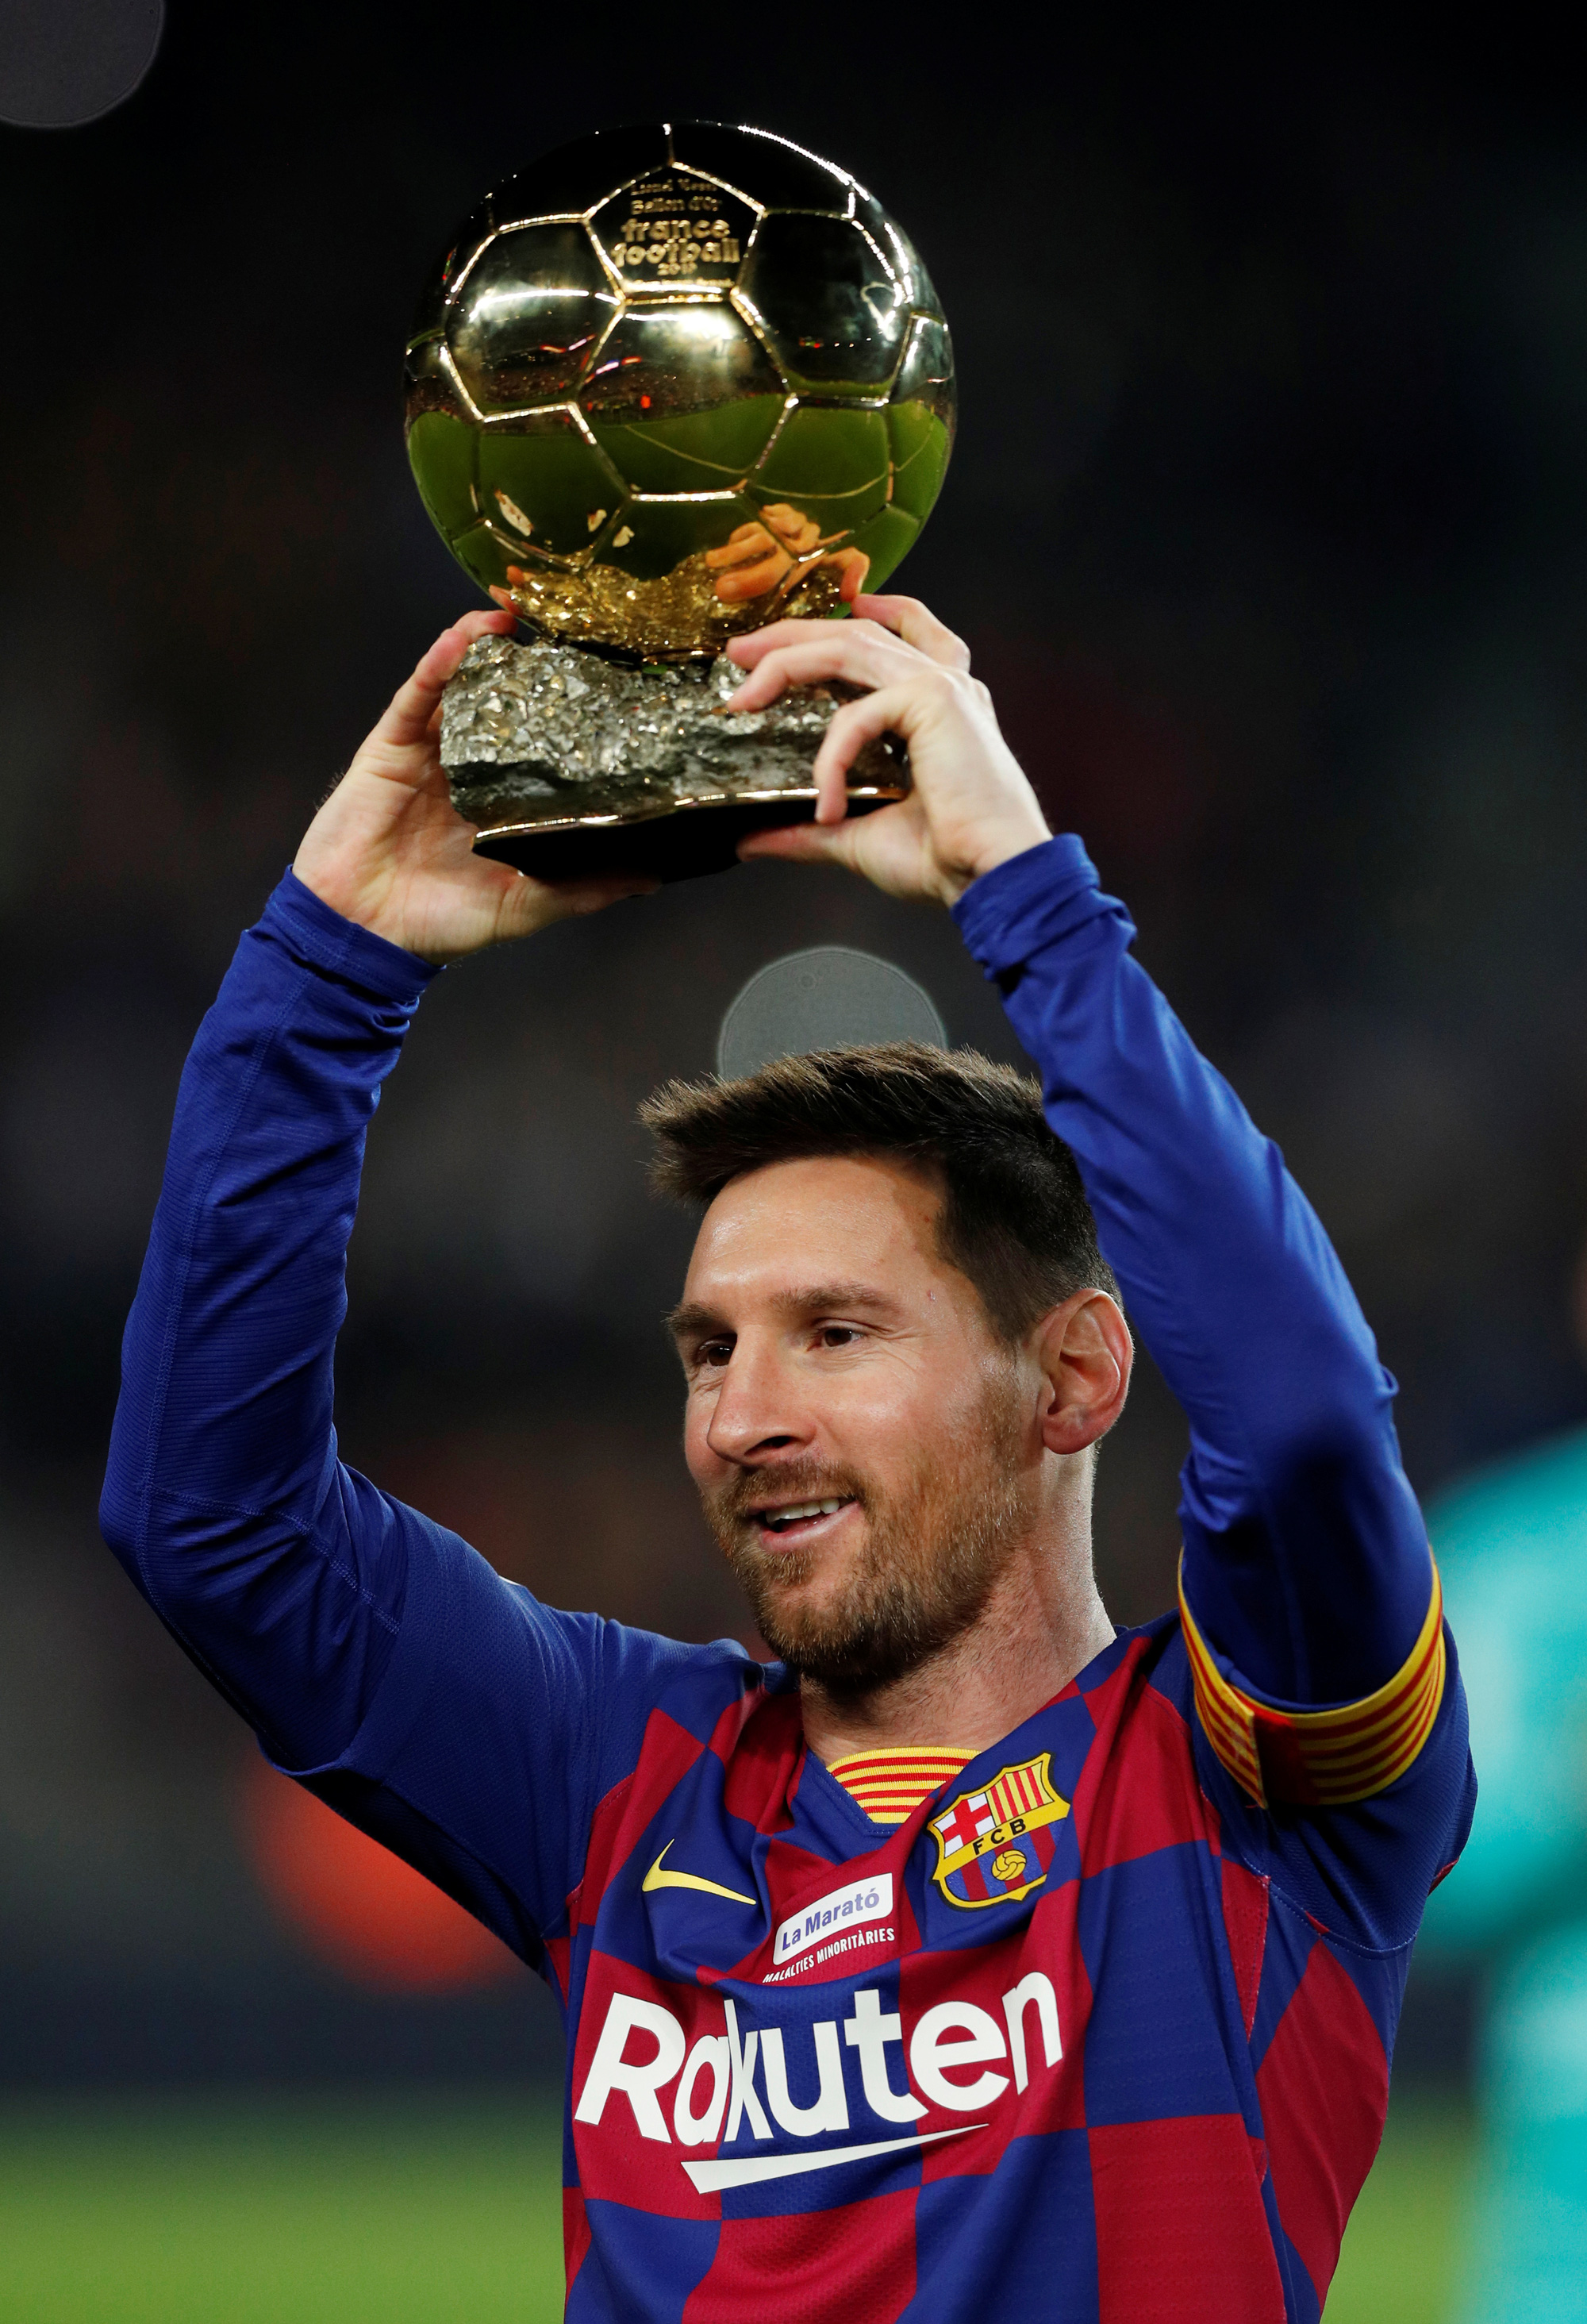 Hat-trick của Messi và Barcelona là một trận đấu tuyệt vời và đầy hứng khởi, chứng kiến sự lên ngôi của đội bóng yêu thích cùng với tài năng vượt trội của Messi trên sân.